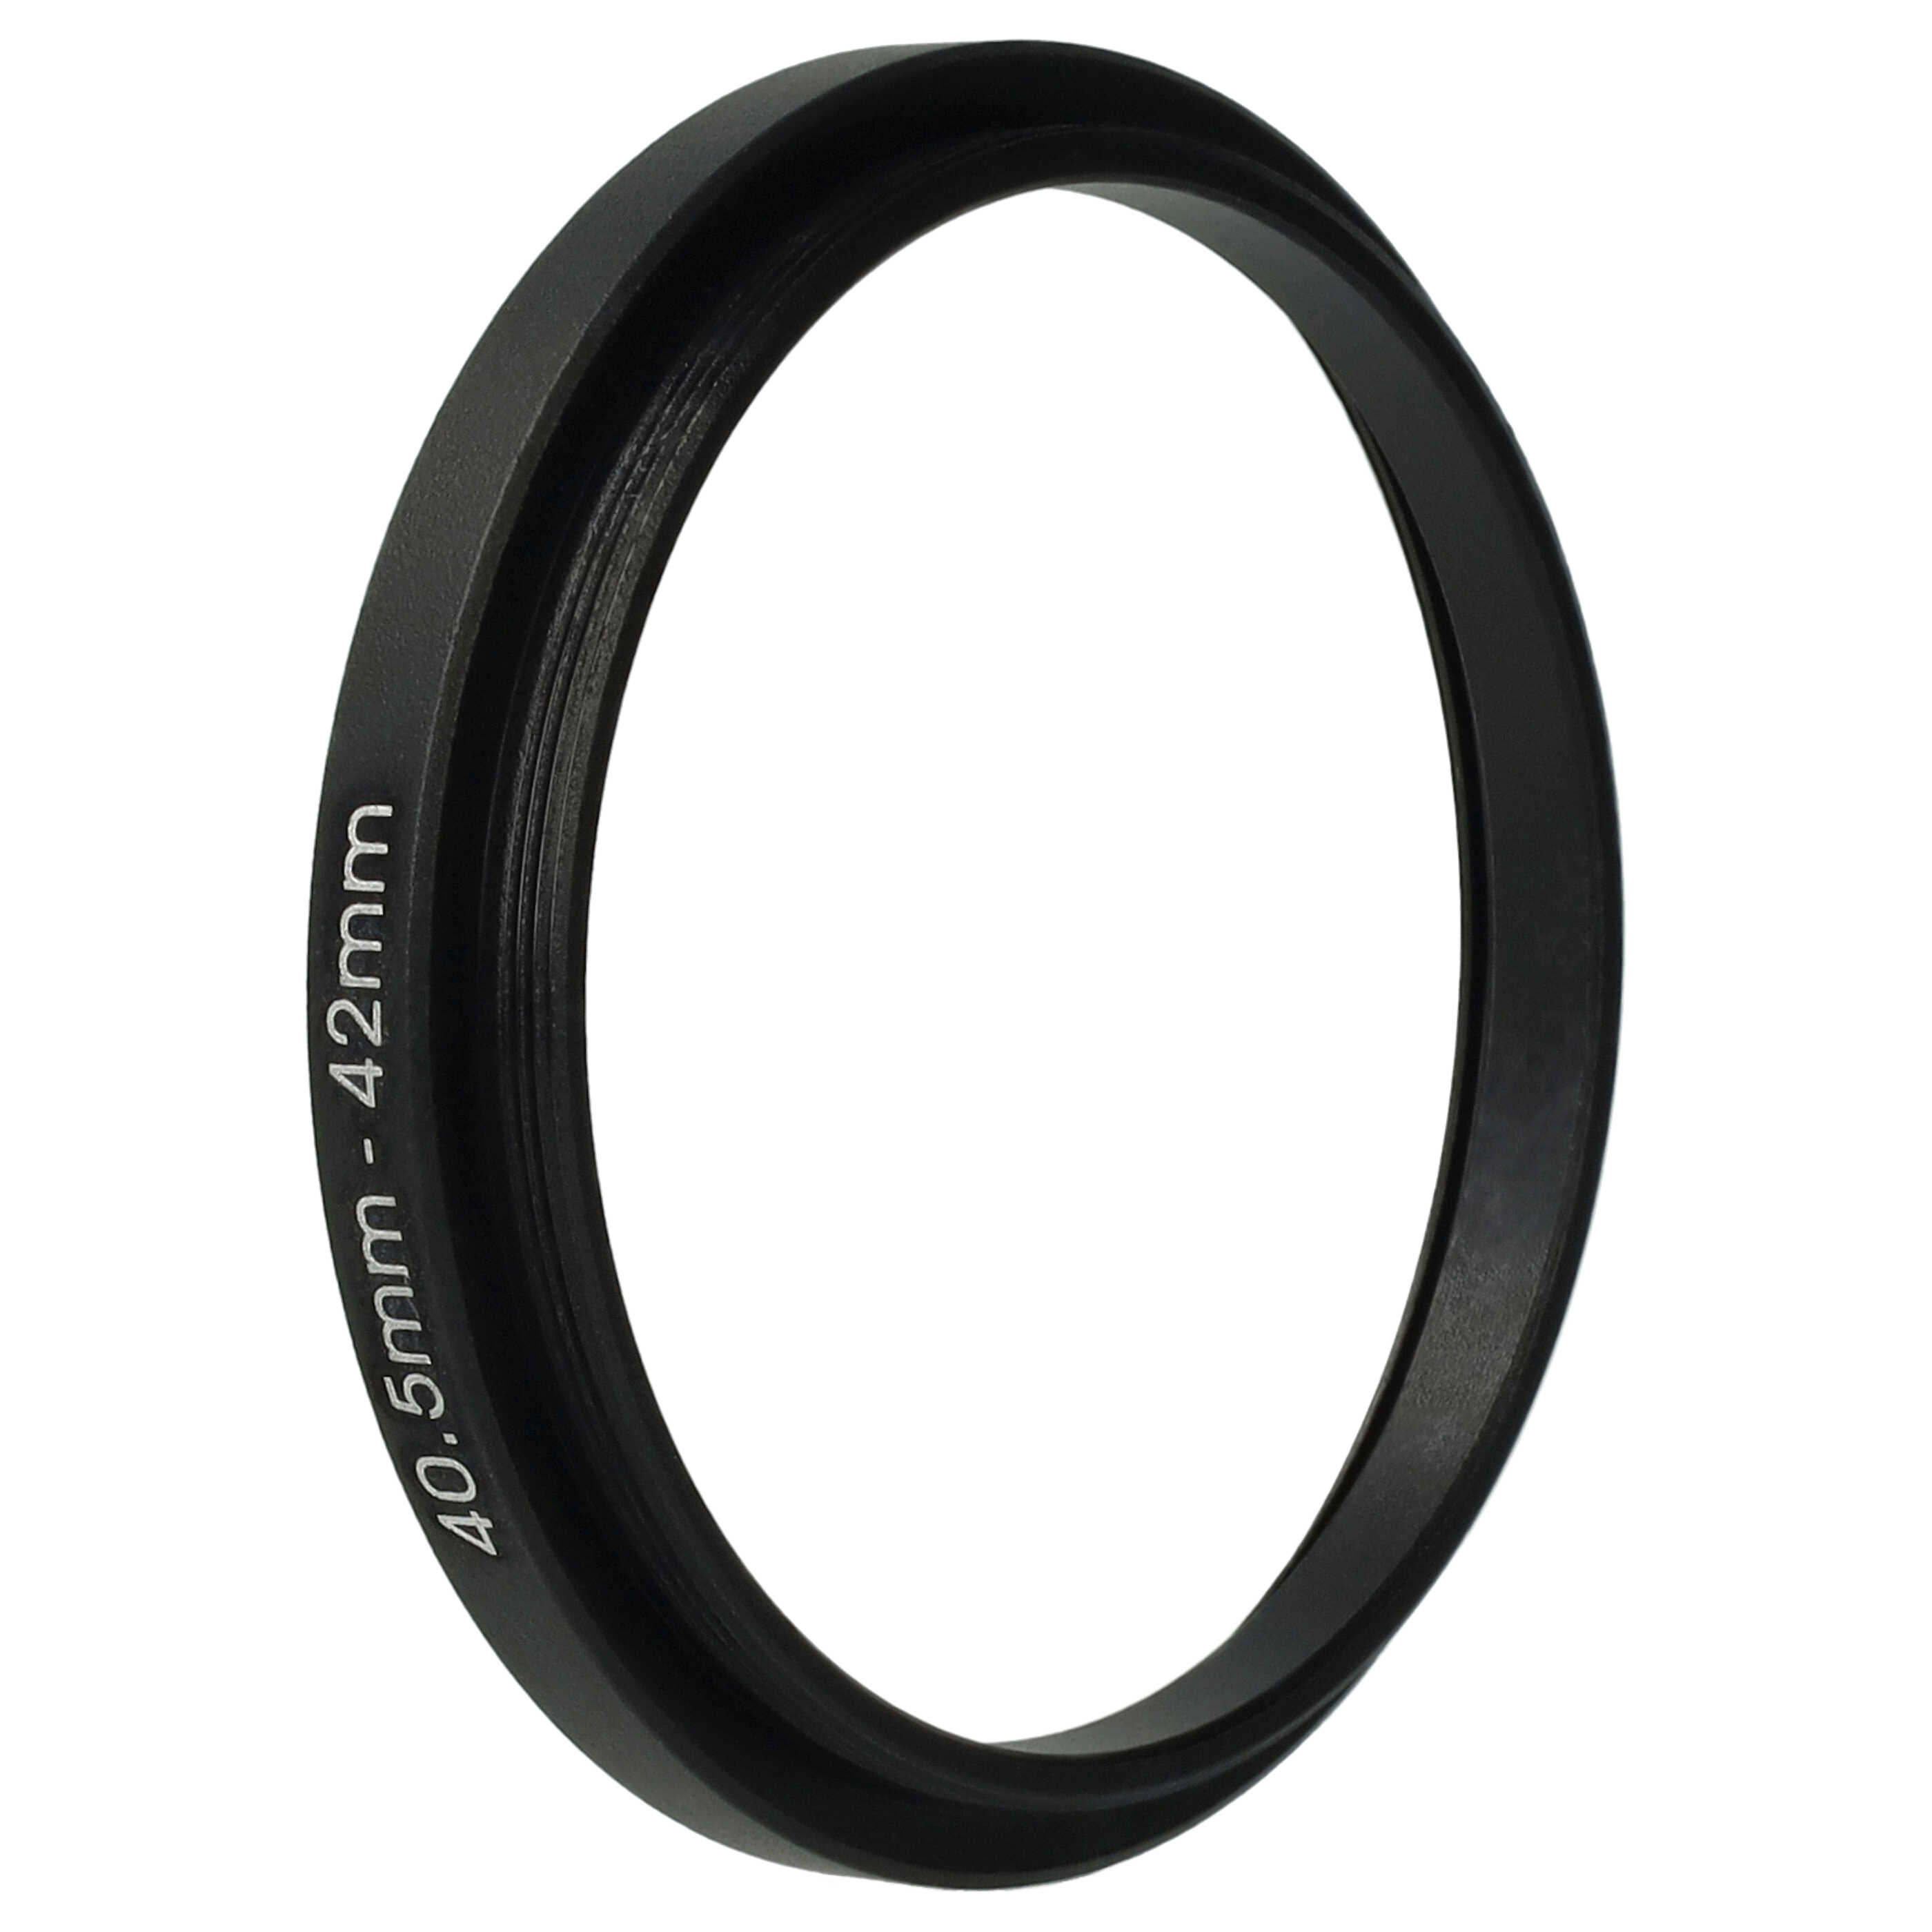 Step-Up-Ring Adapter 40,5 mm auf 42 mm passend für diverse Kamera-Objektive - Filteradapter